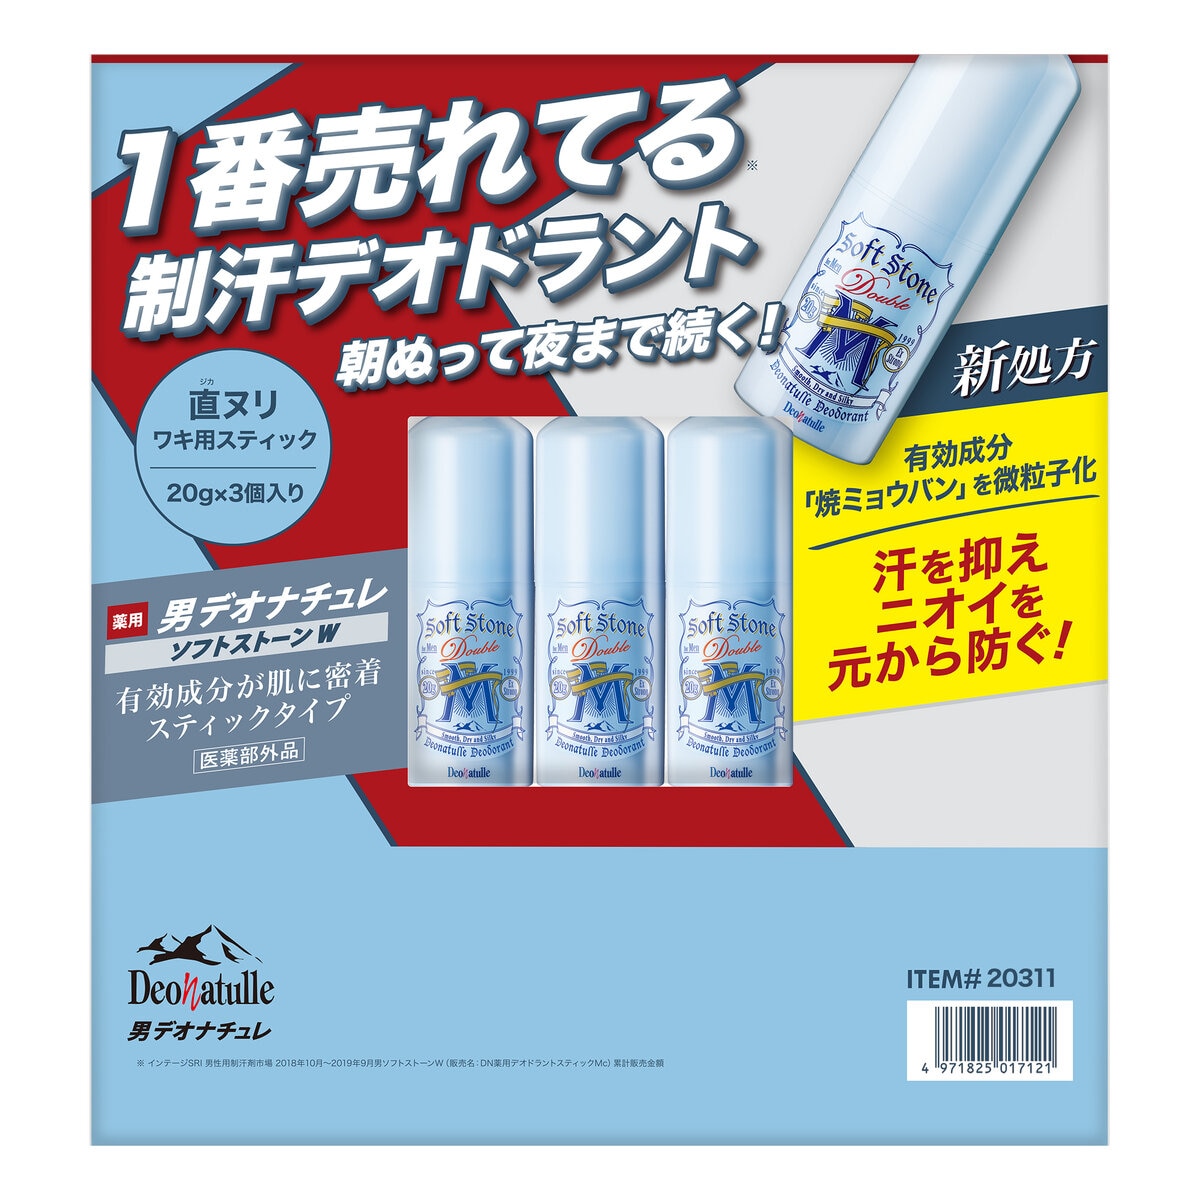 デオナチュレ男ソフトストーンW ワキ用制汗剤 3個セット Costco Japan